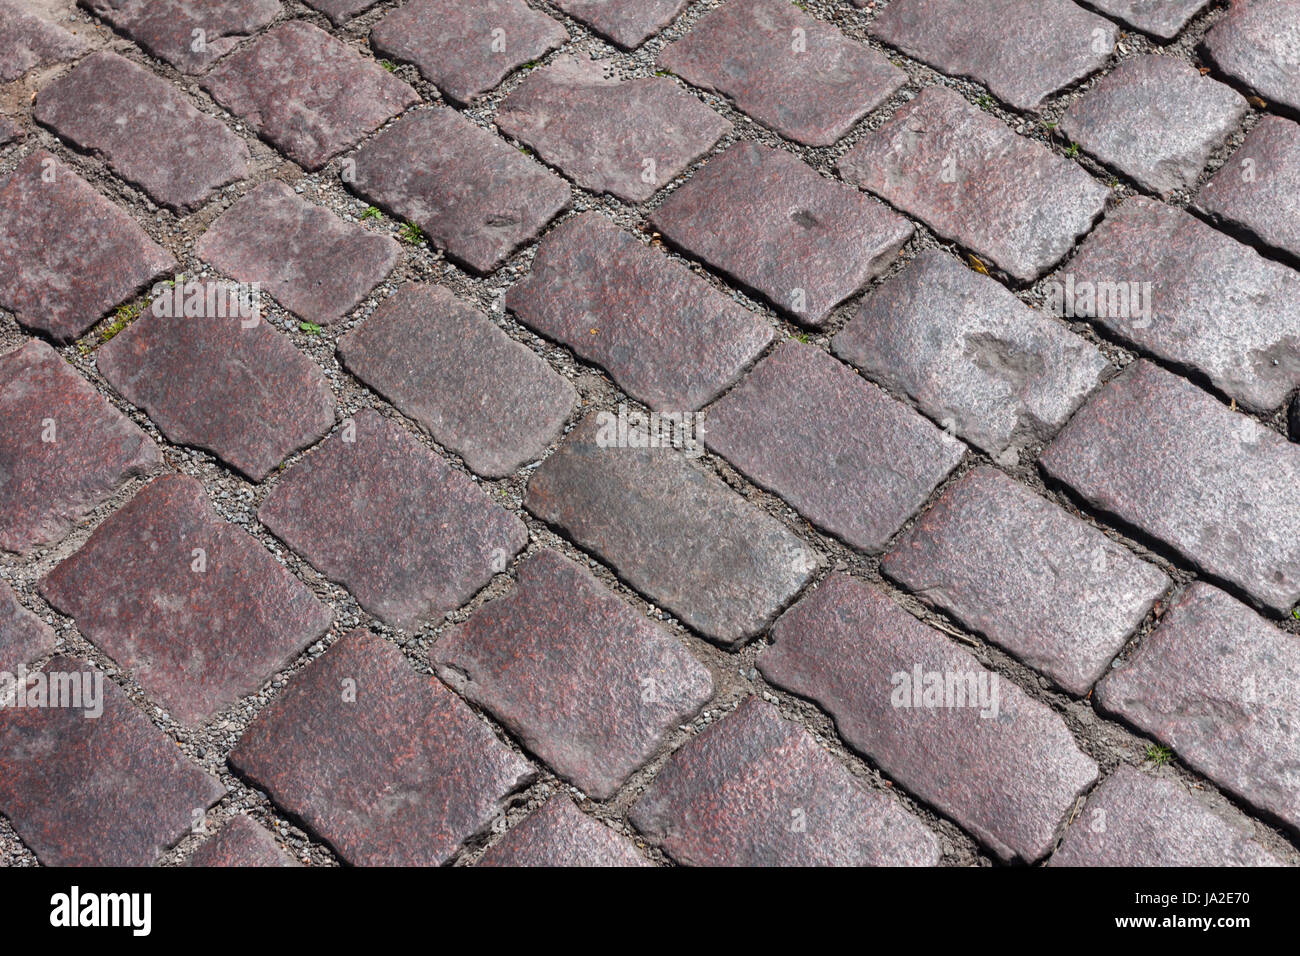 city, town, closeup, stone, rough, vintage, lines, rock, pavement, square, Stock Photo